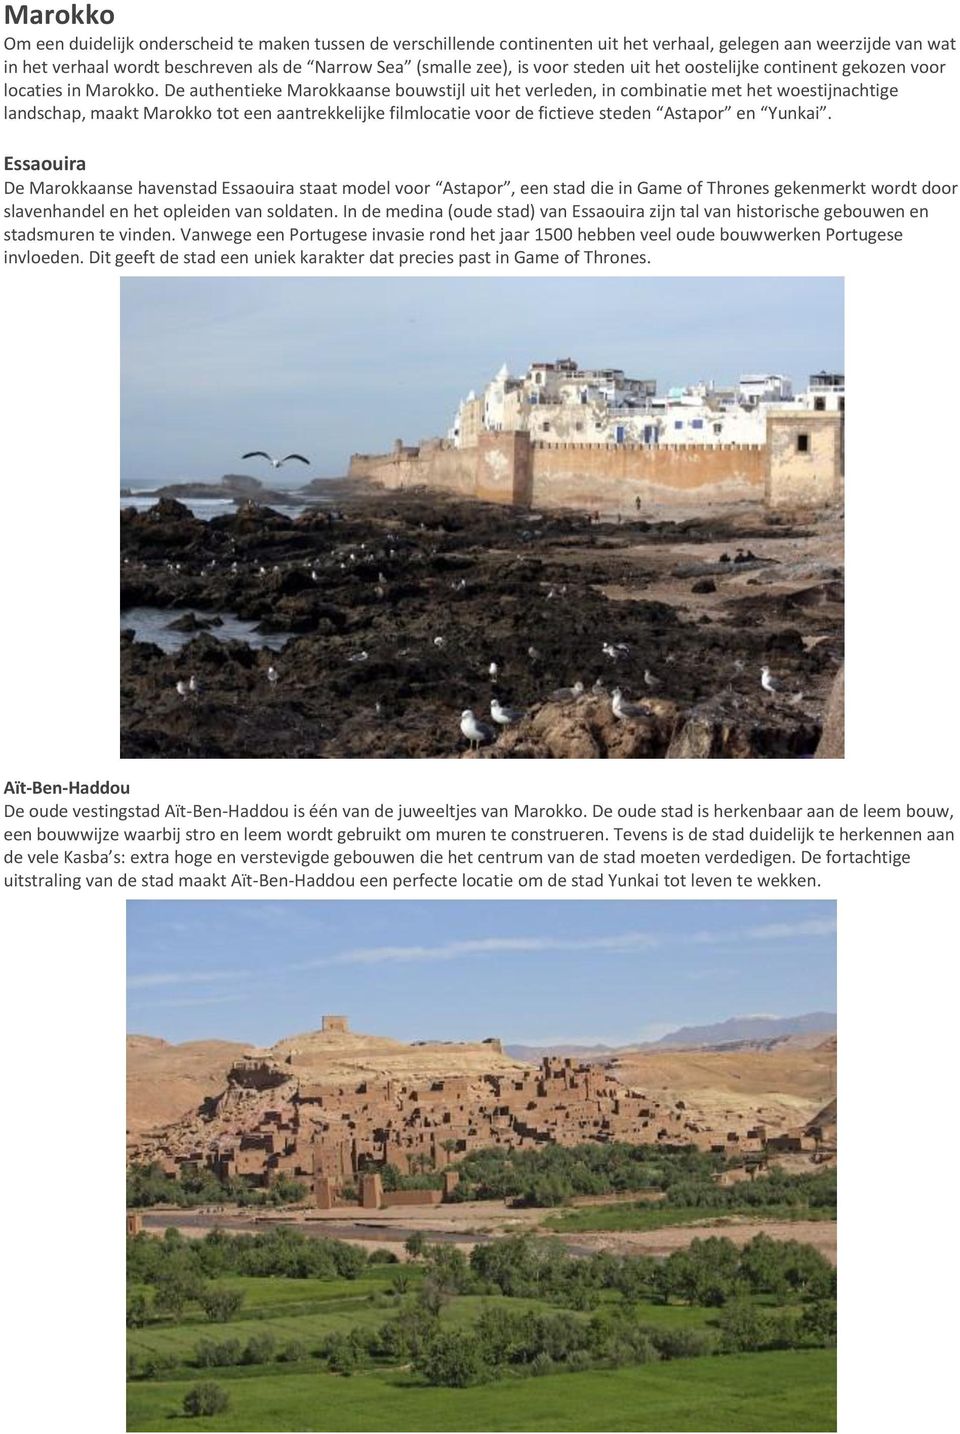 De authentieke Marokkaanse bouwstijl uit het verleden, in combinatie met het woestijnachtige landschap, maakt Marokko tot een aantrekkelijke filmlocatie voor de fictieve steden Astapor en Yunkai.